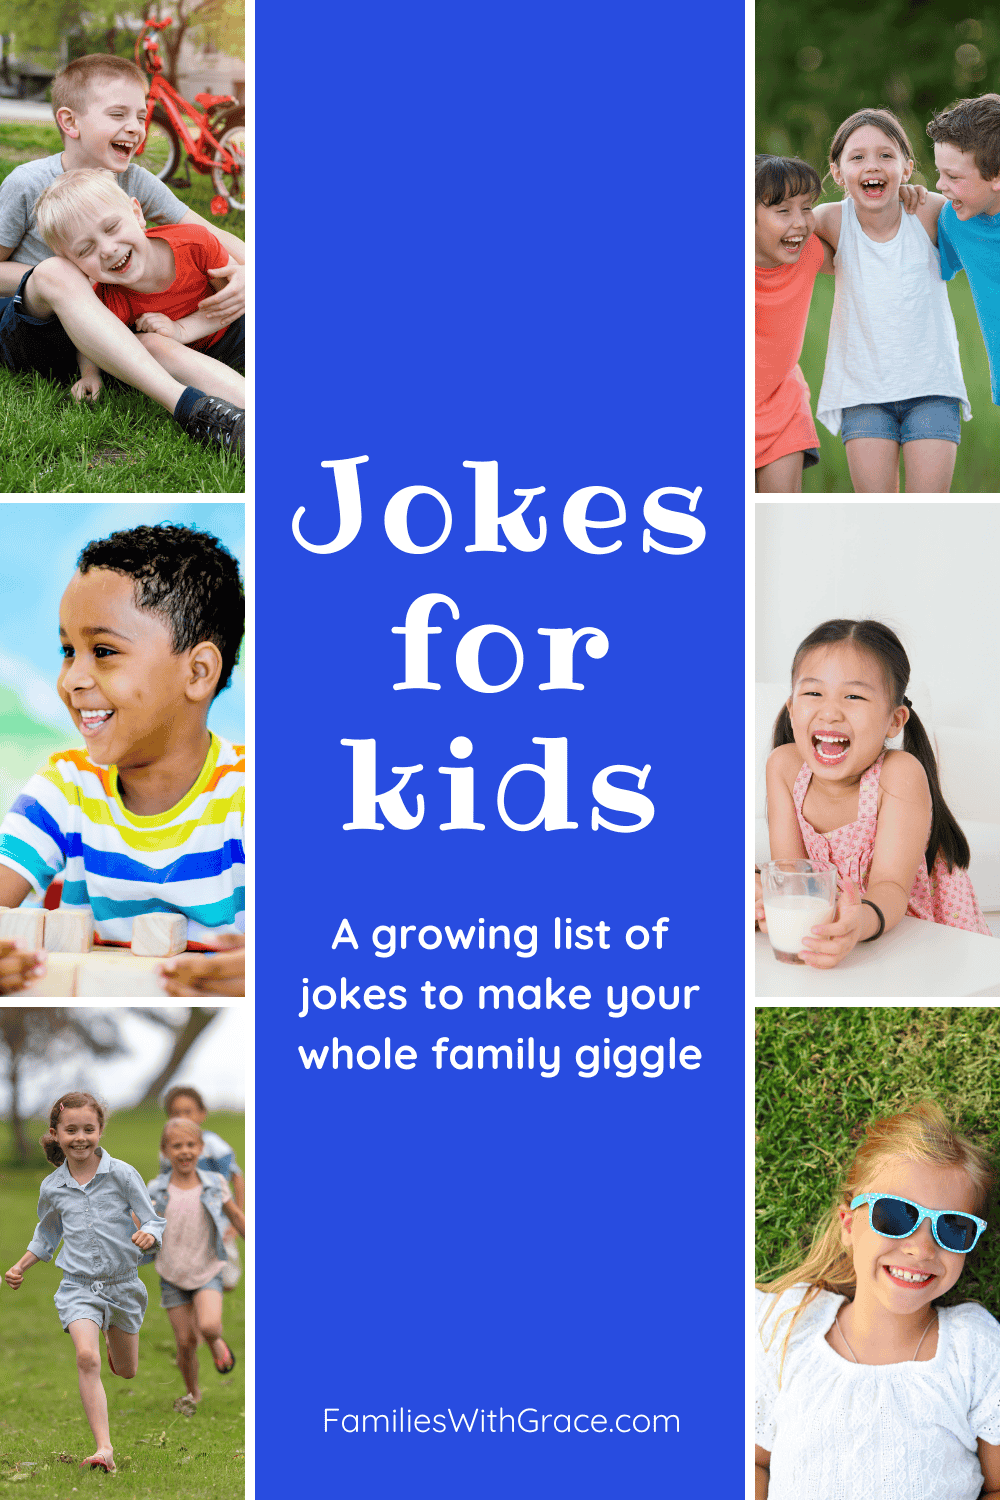 Jokes for kids